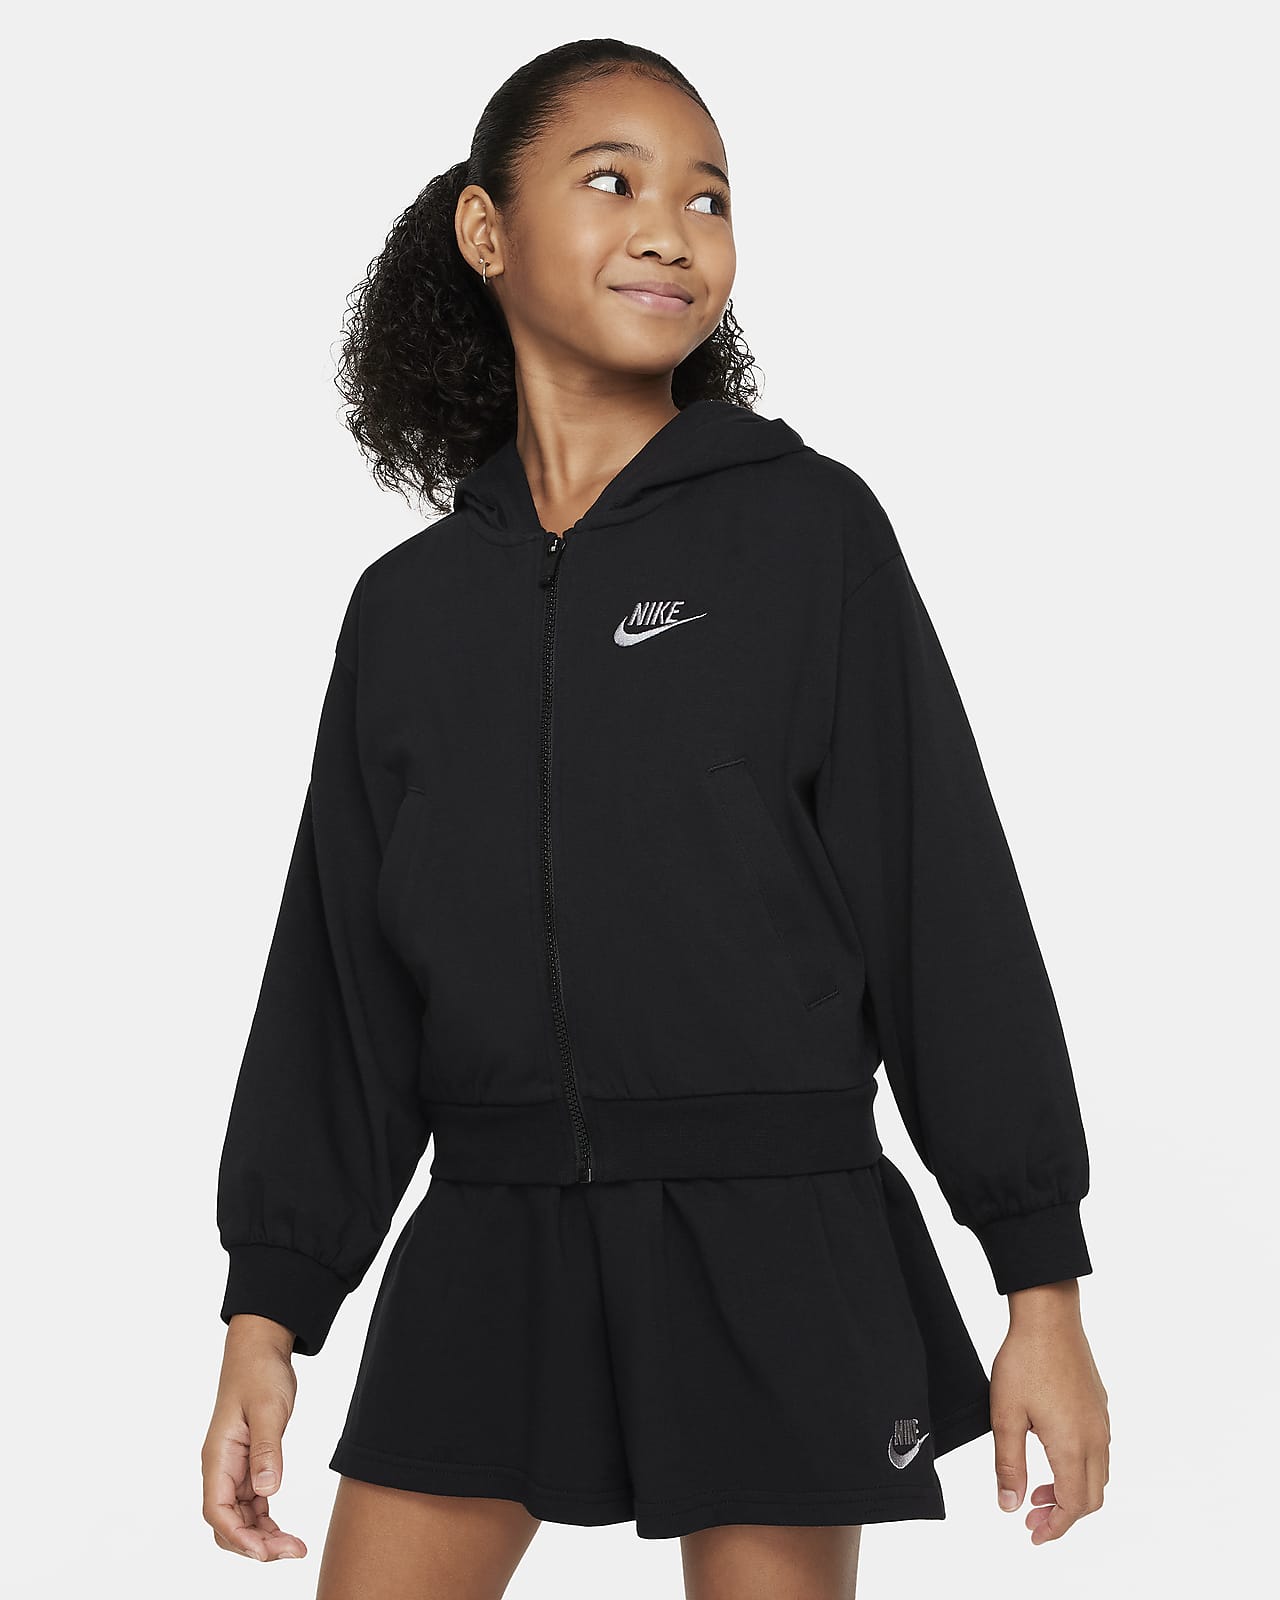 Mikina s kapucí a dlouhým zipem Nike Sportswear pro větší děti (dívky)